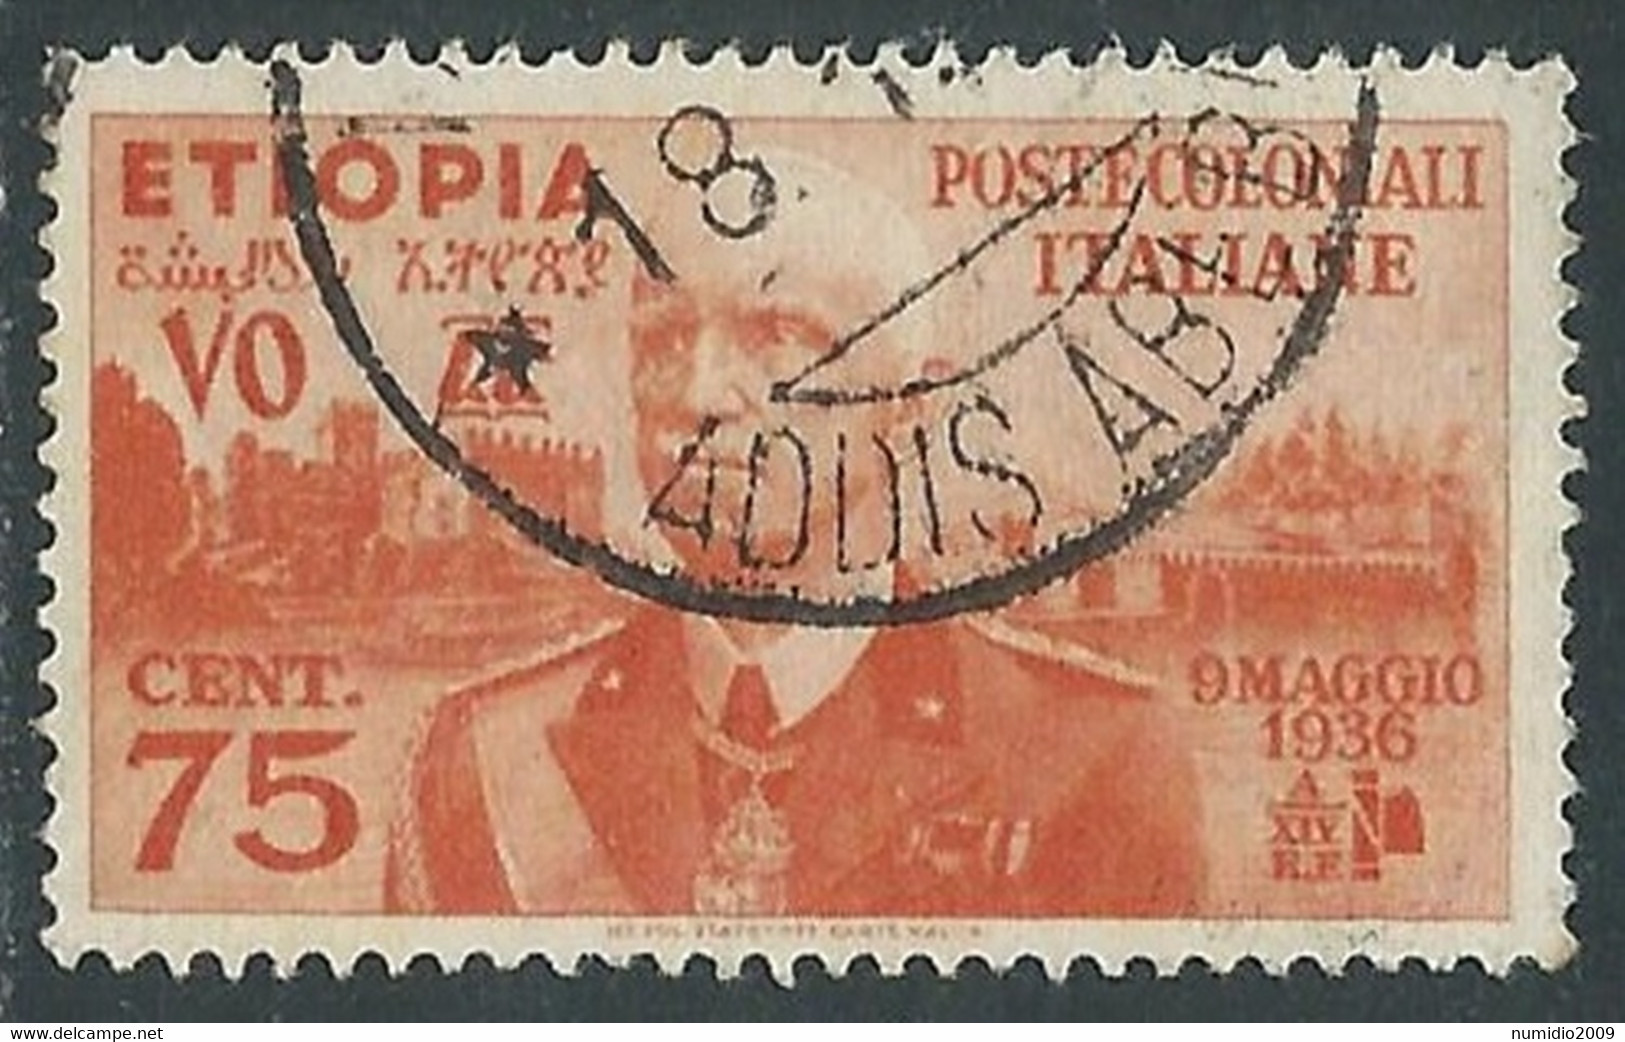 1936 ETIOPIA USATO EFFIGIE 75 CENT - RF25-4 - Ethiopia